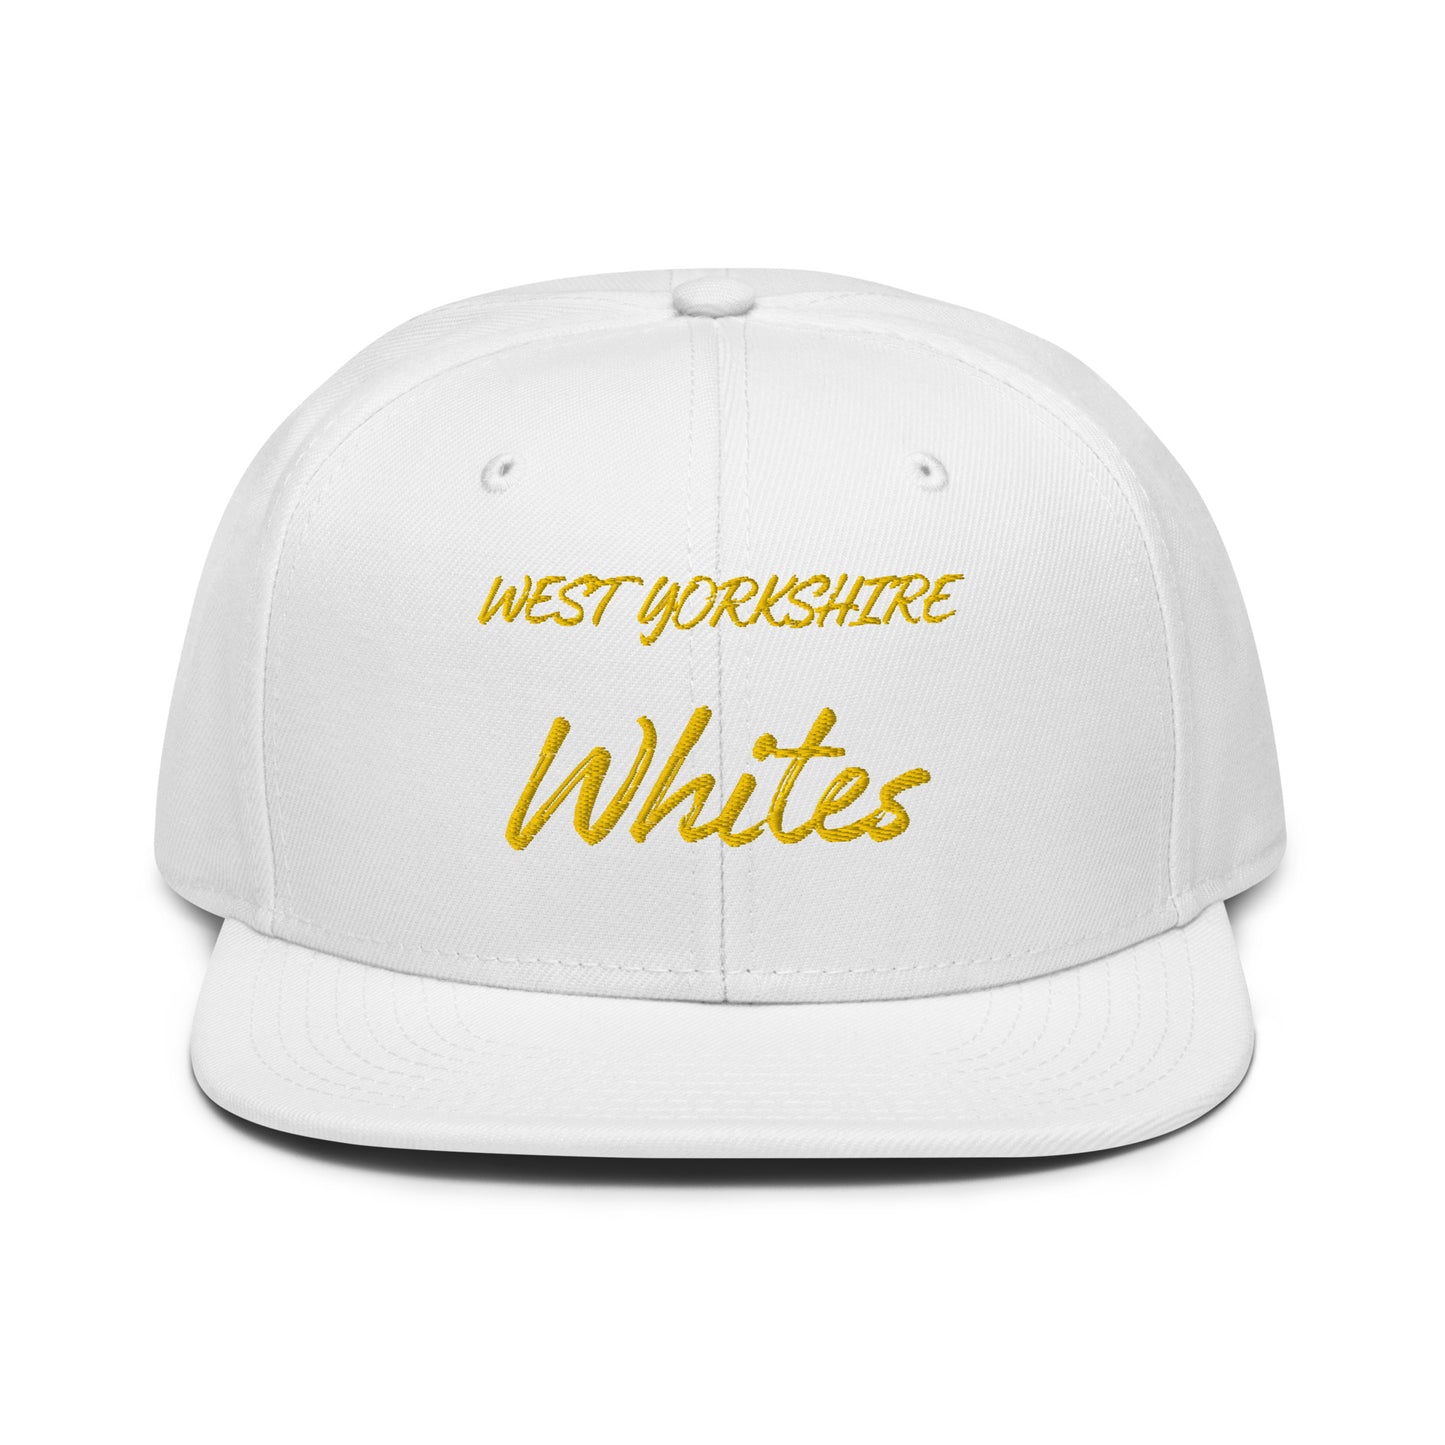 West Yorkshire Whites Snapback Hat